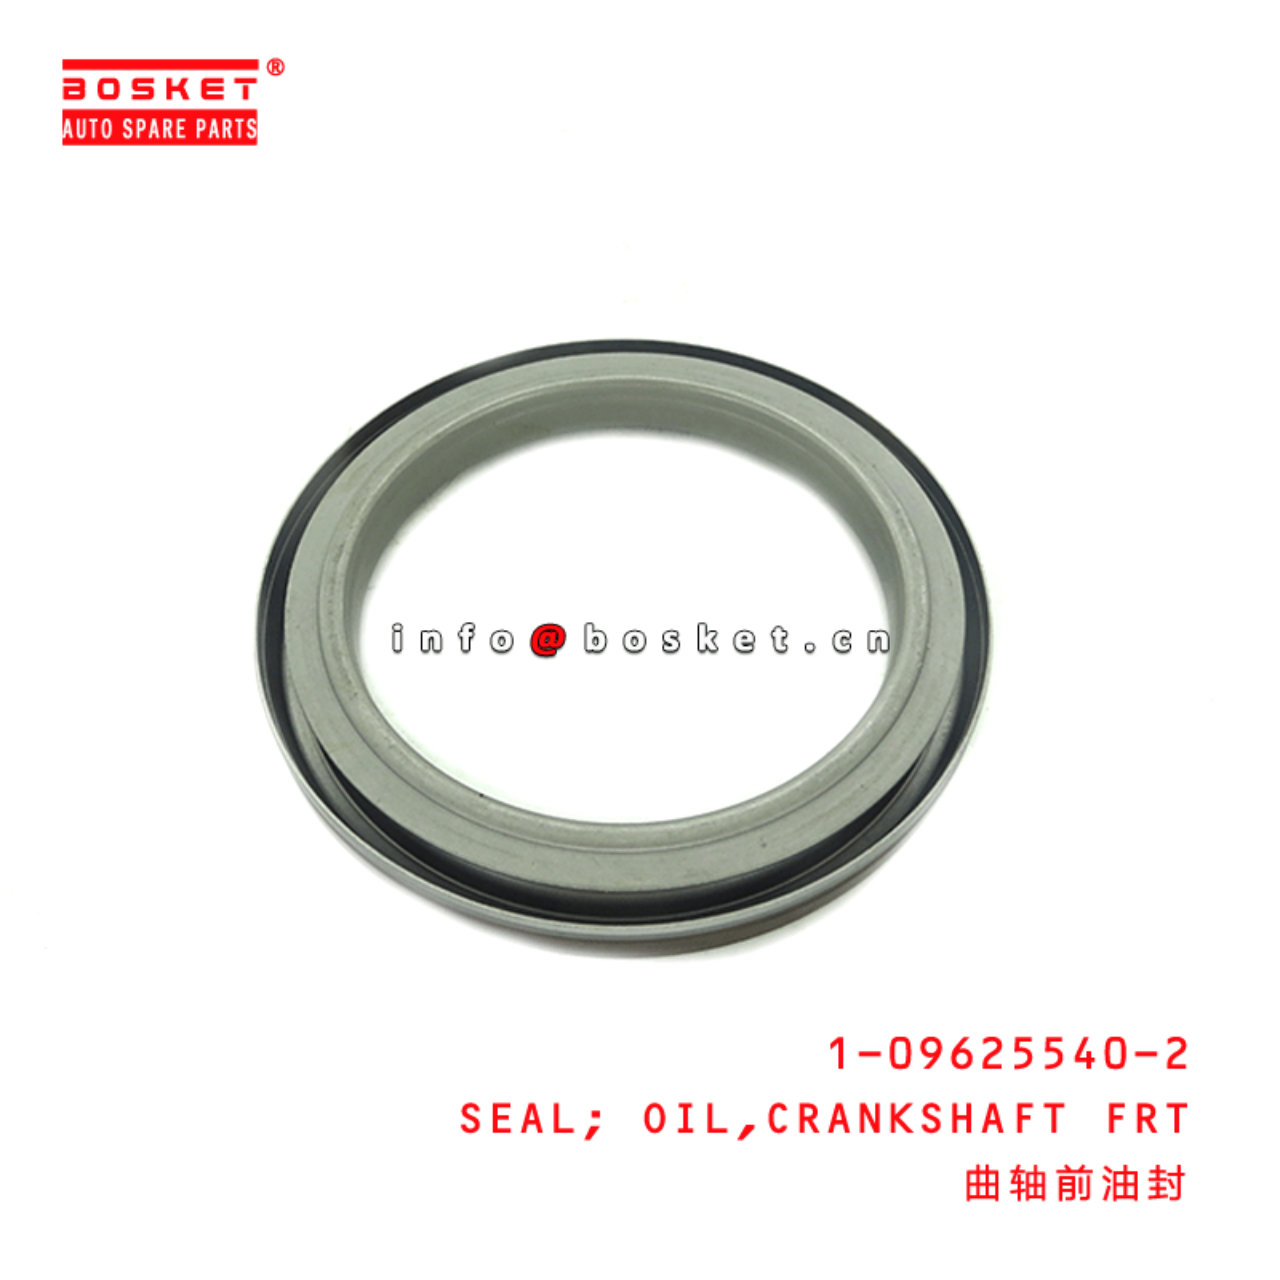  1-09625540-2 Crankshaft Front Oil Seal 1096255402 Suitable for ISUZU VC46 6UZ1